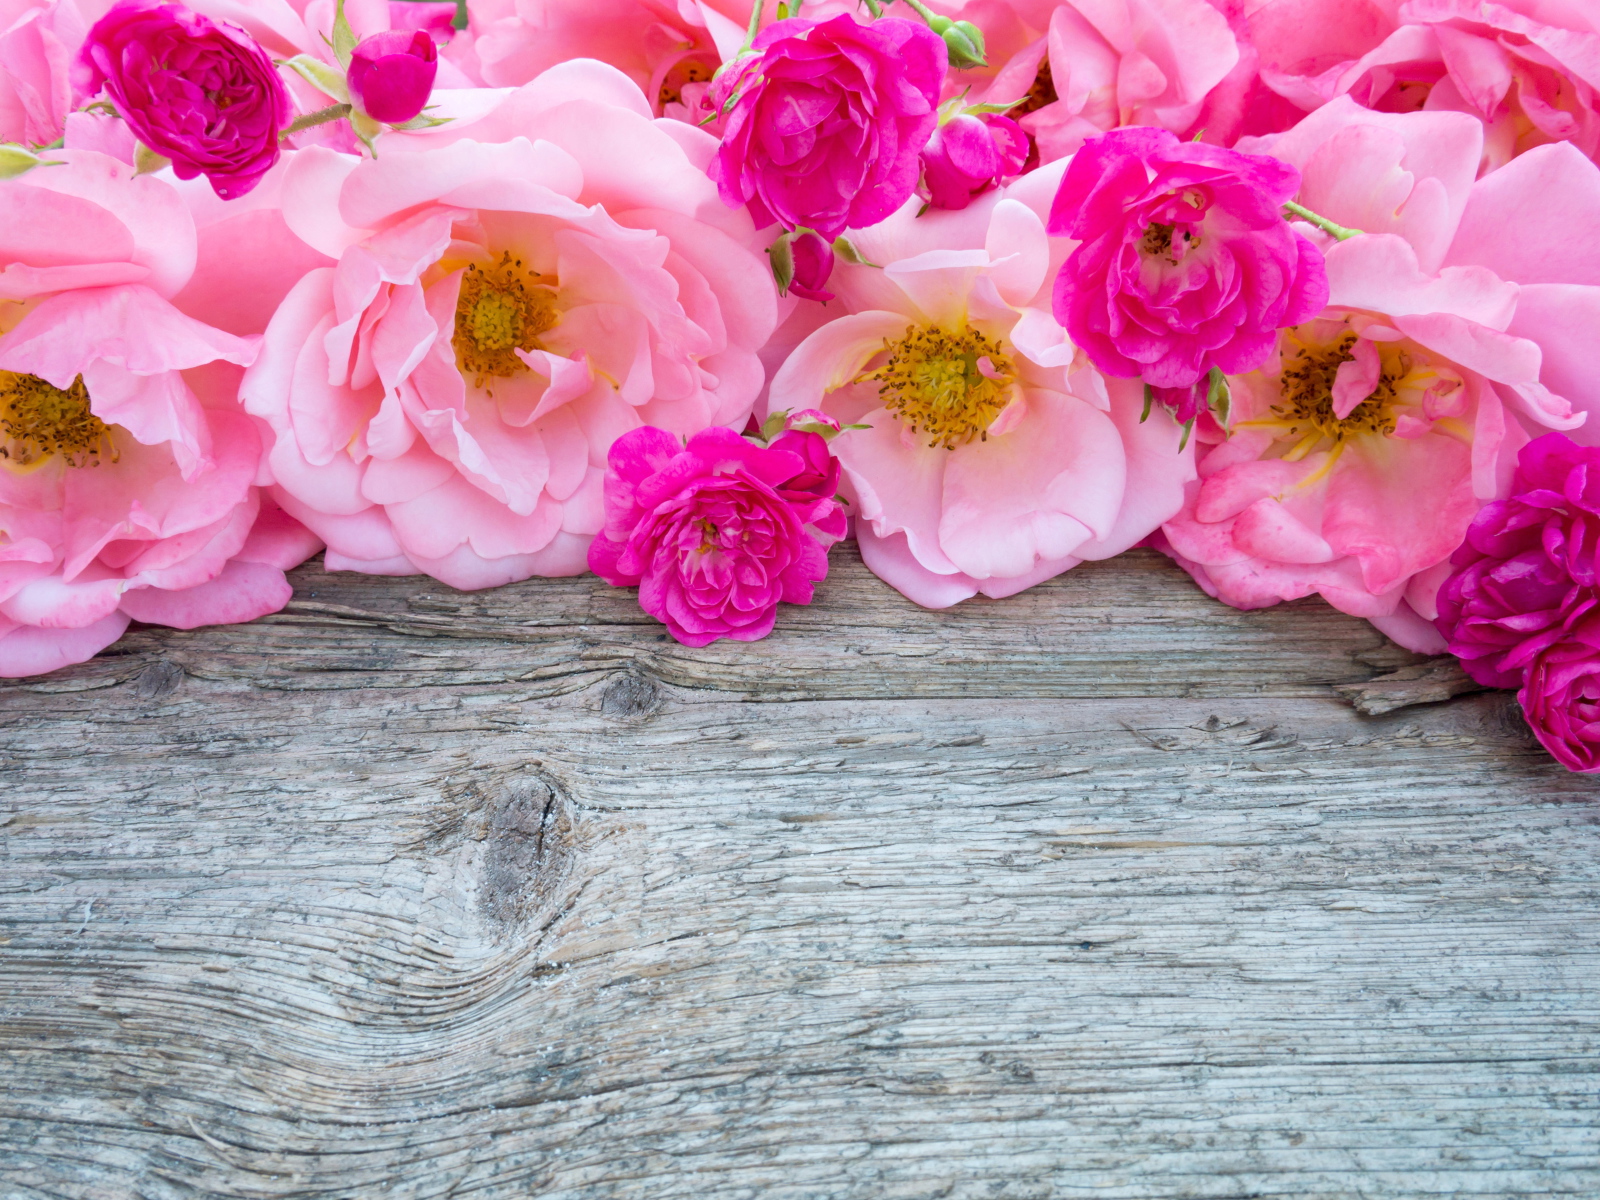 Розовые цветы парковой розы на деревянном столе 